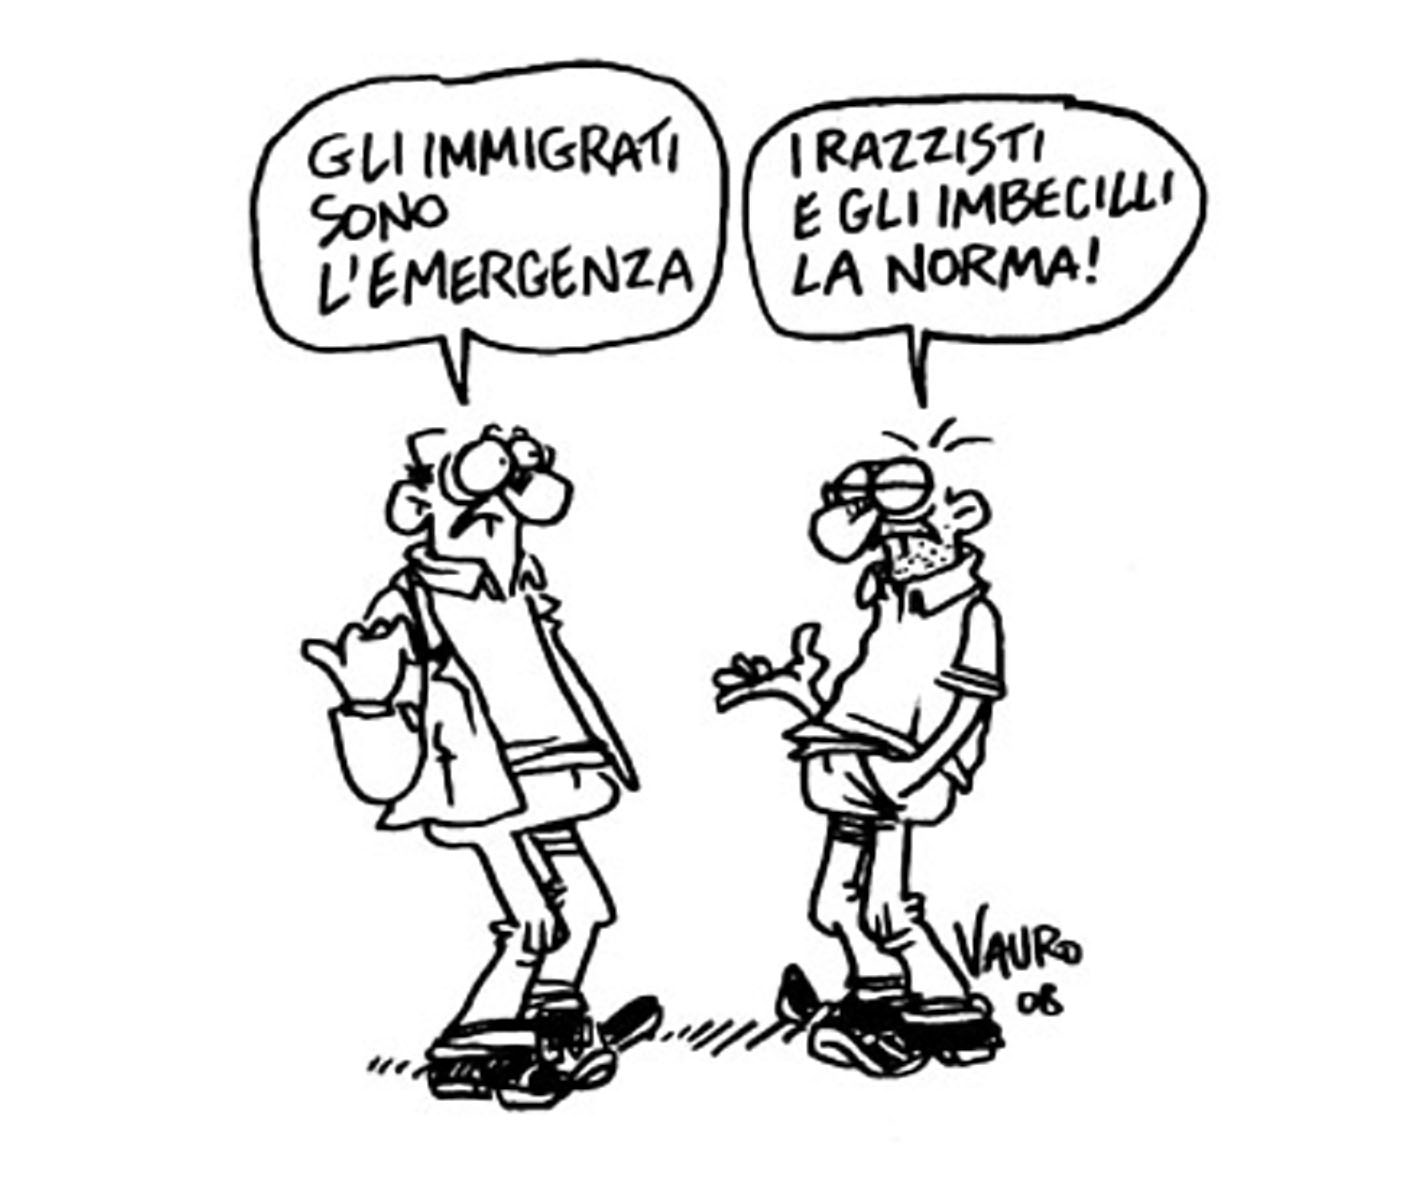 vauro_immigrati